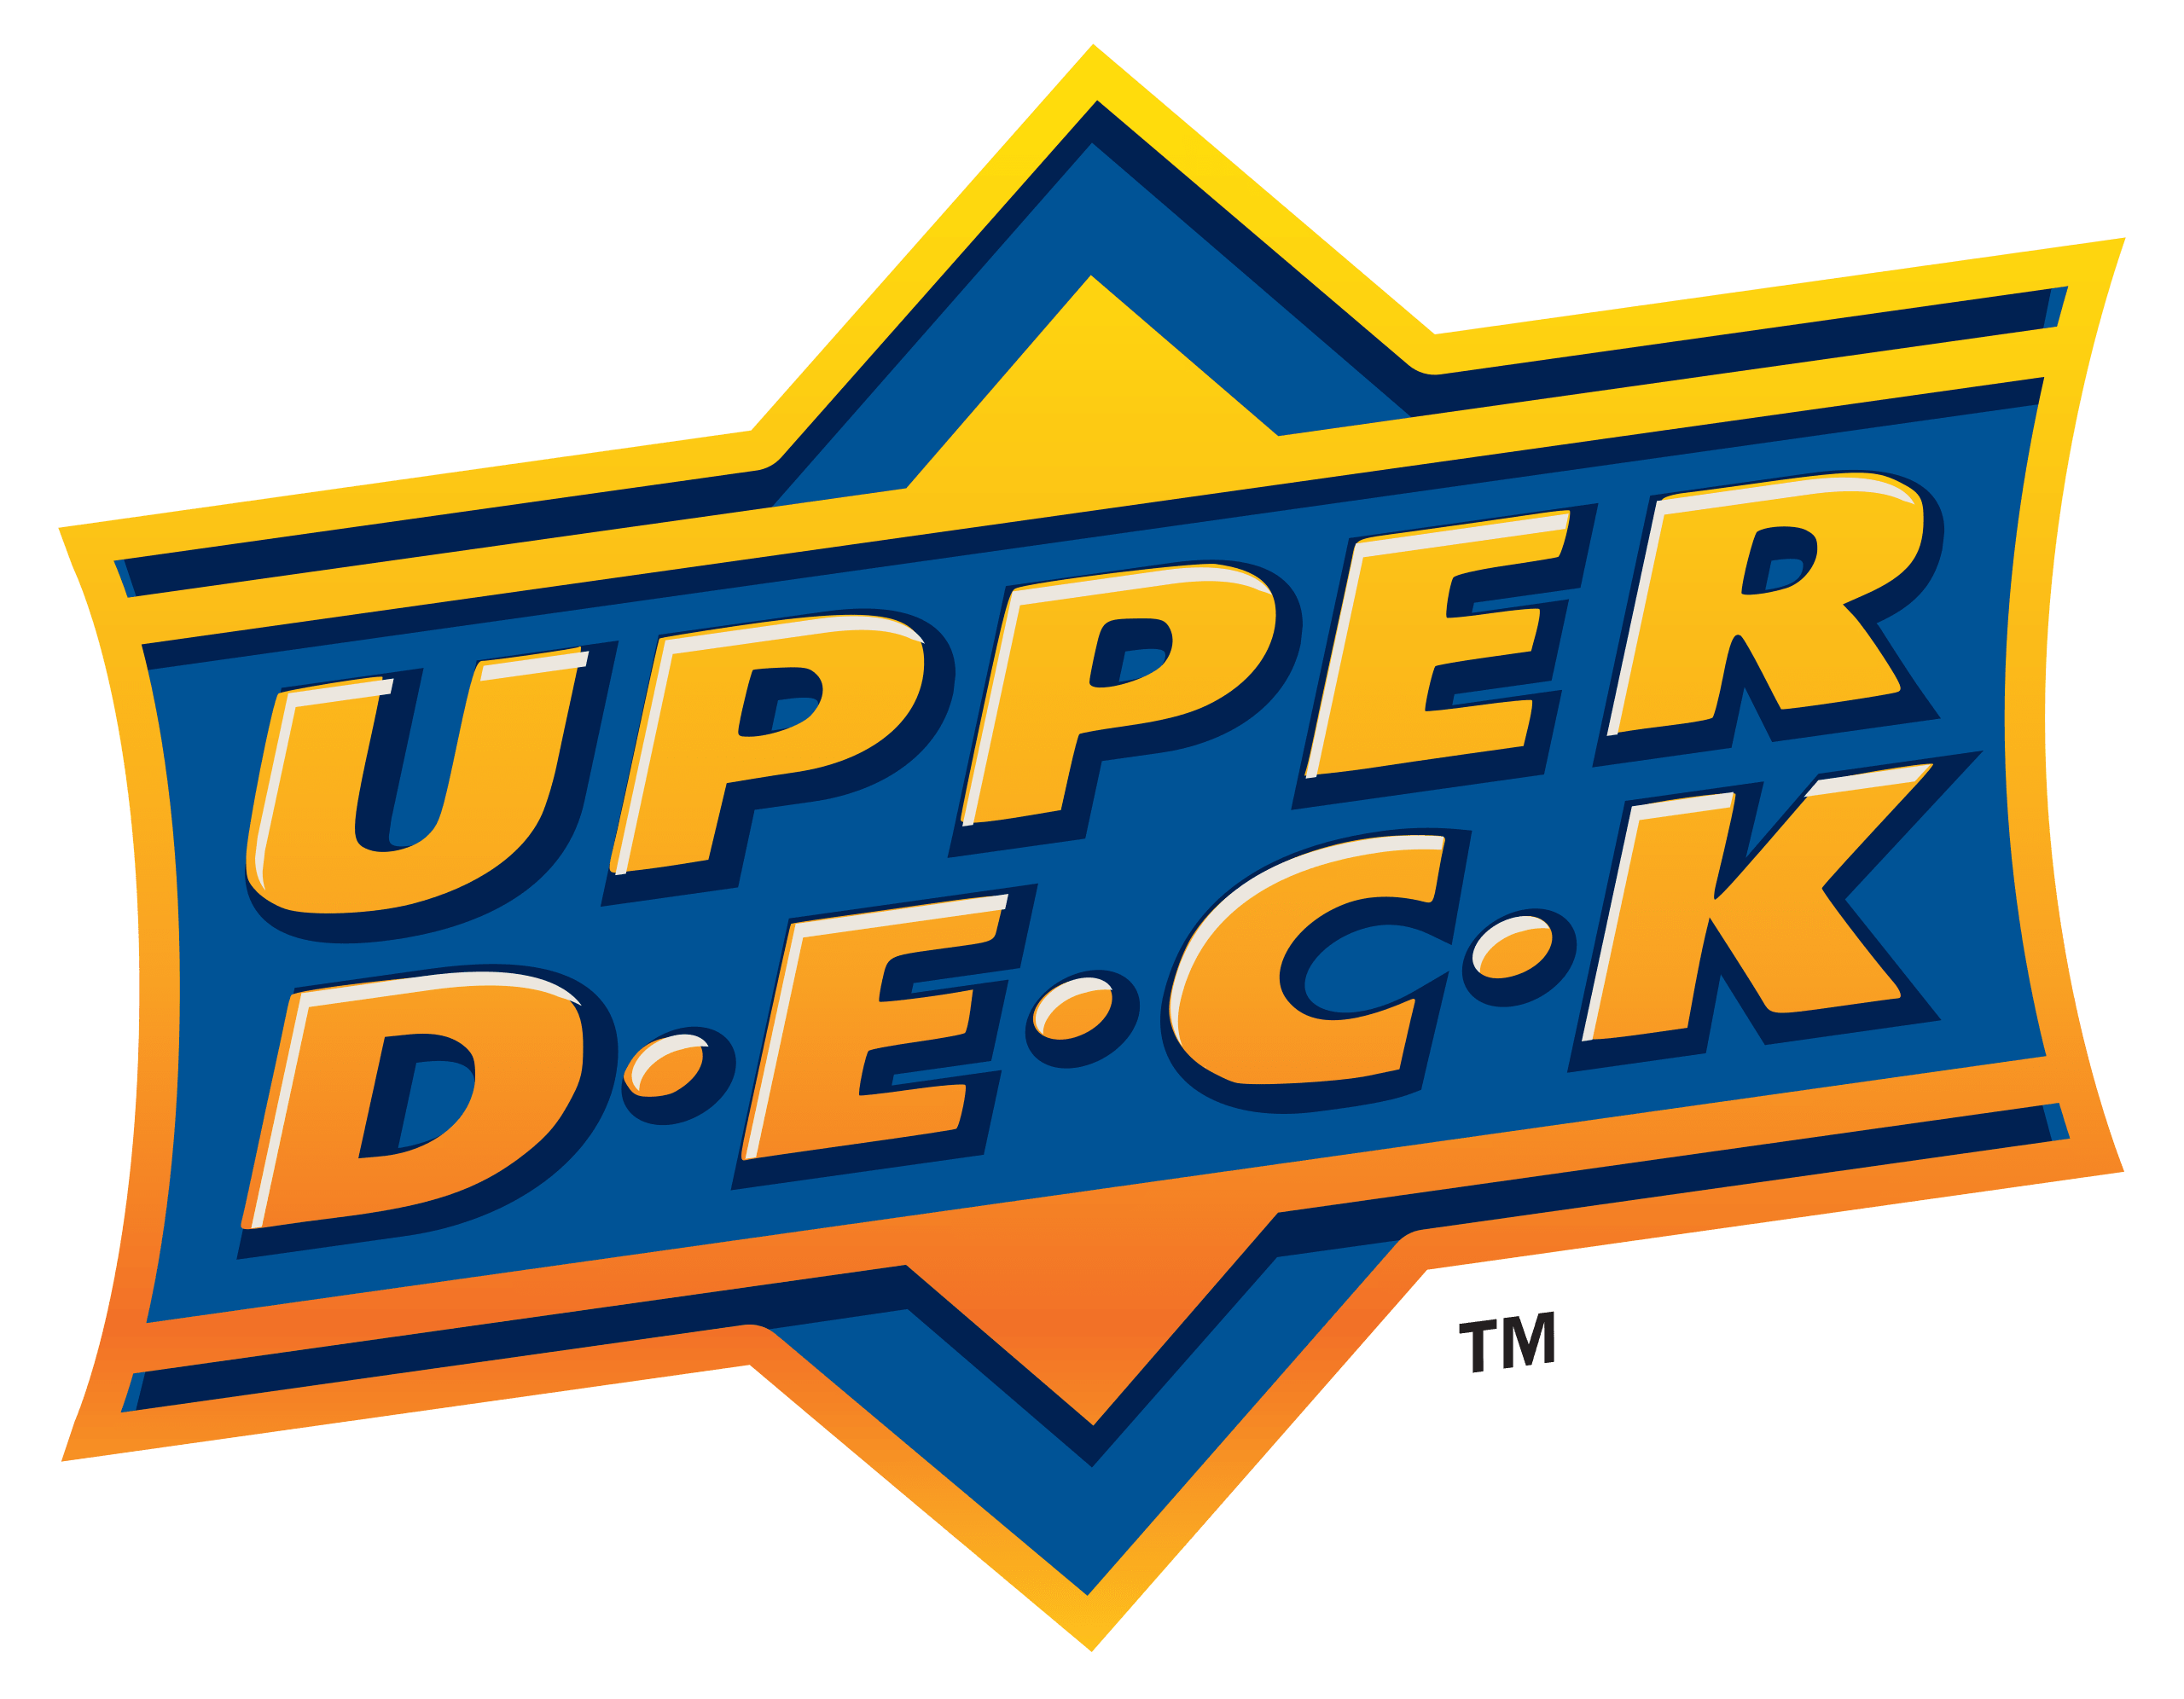 Marvel - 2020/21 Upper Deck - Marvel Annual - Hobby Box (16 Packs) - Hobby Champion Inc